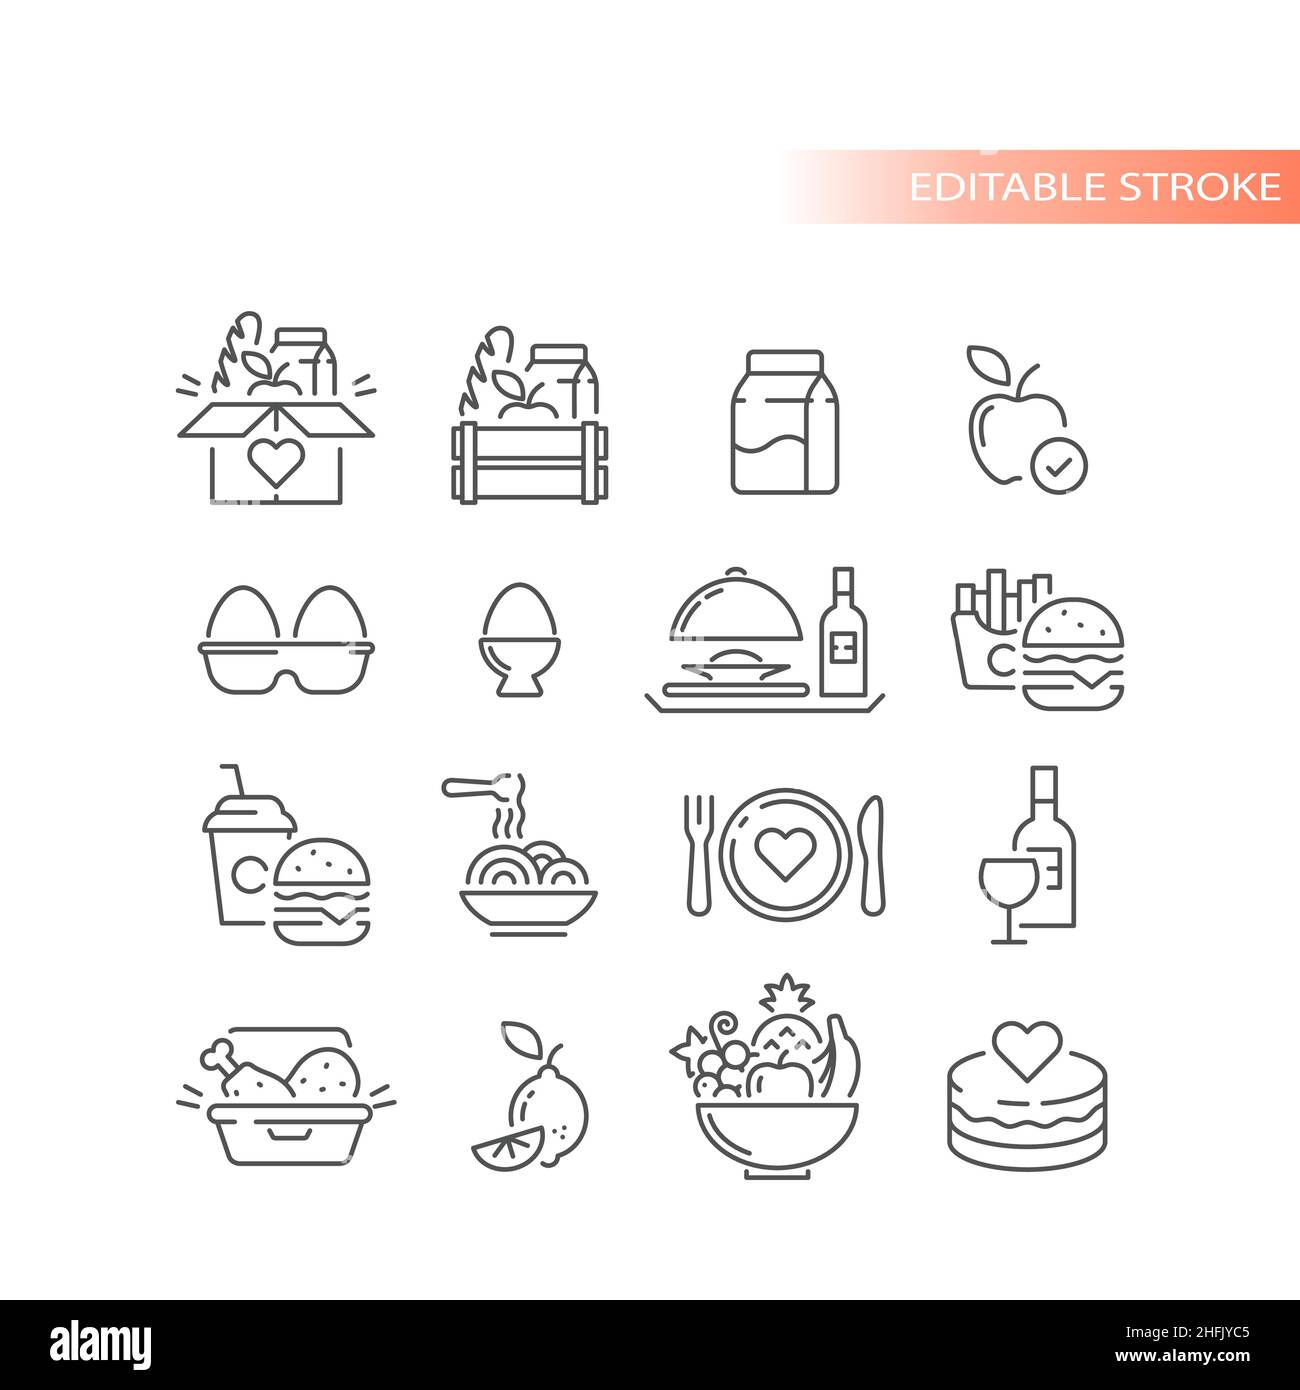 Essen, leckere Lebensmittel Kiste, Kugel von Früchten. Kuchen, Eier, mitnehmen Lieferung skizziert Vektor-Symbol-Set. Stock Vektor